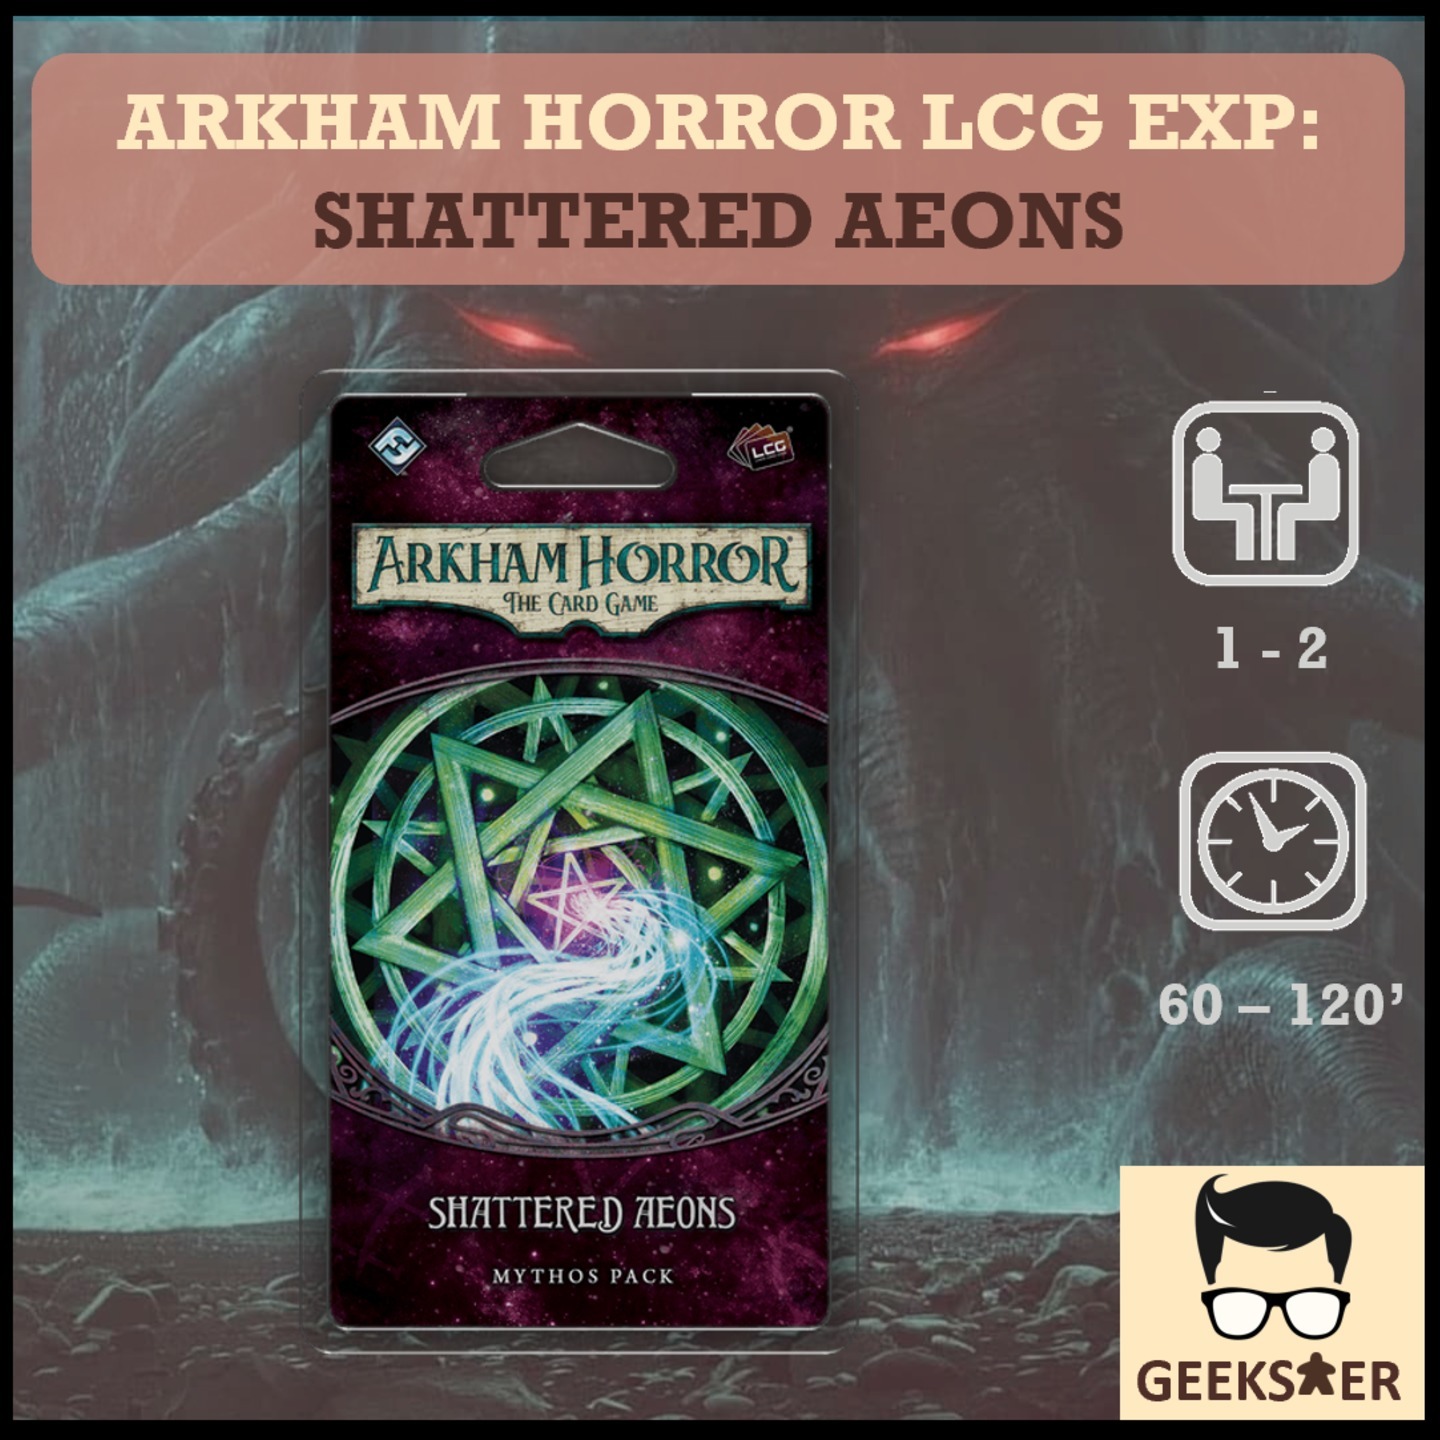 Arkham Horror LCG Exp - Shattered Aeons